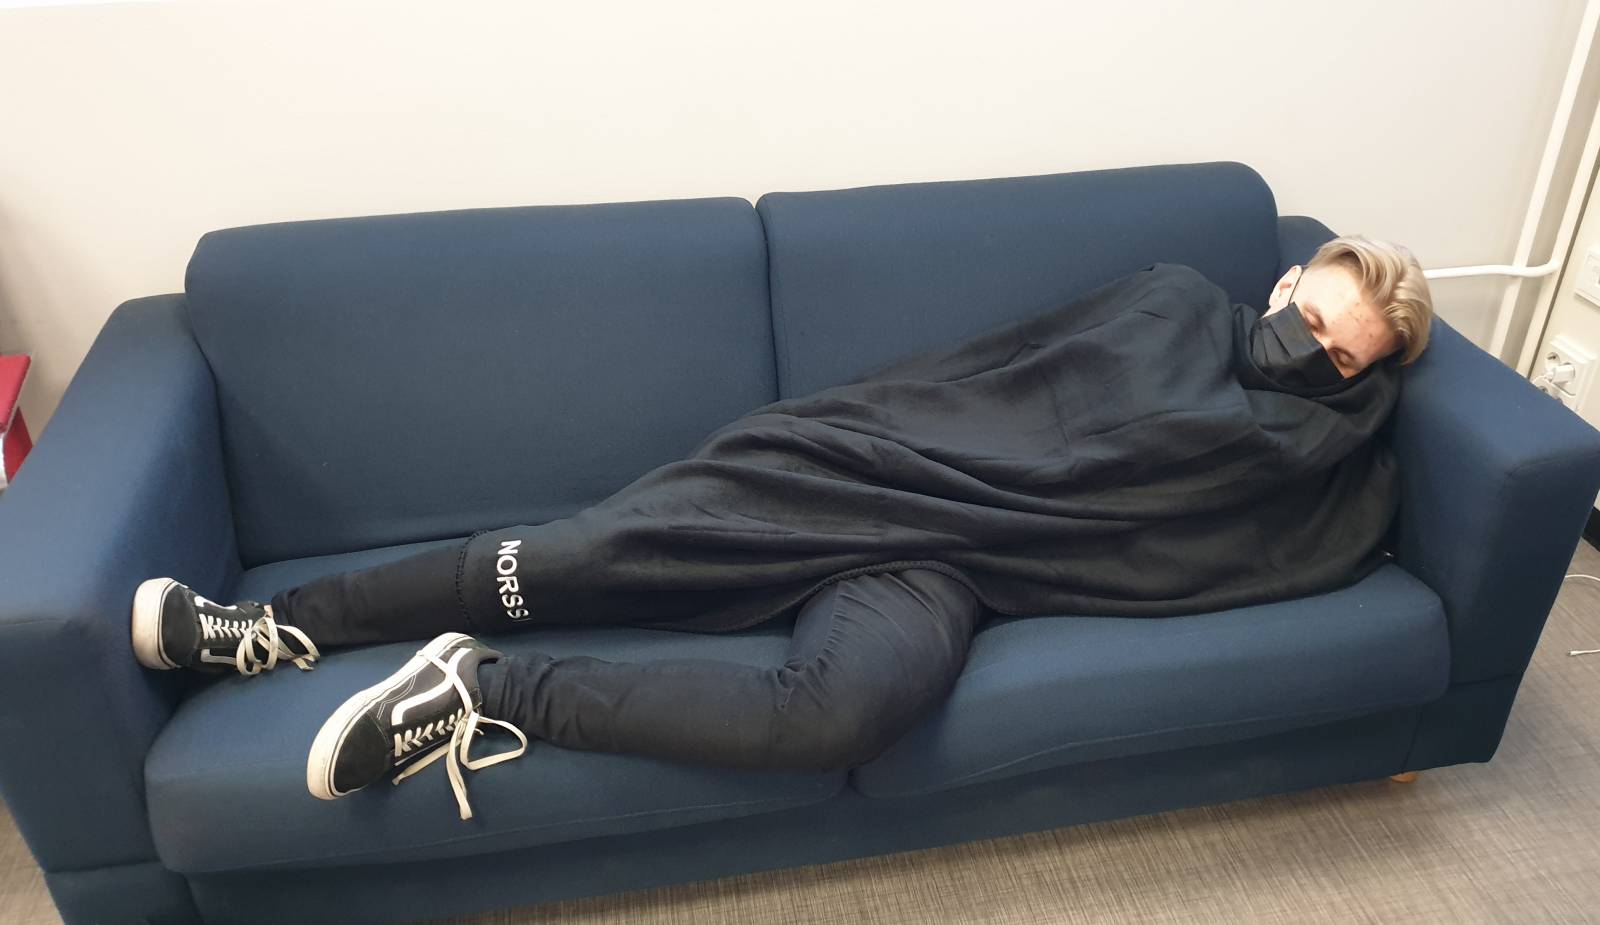 Opiskelija nukkuu sohvalla viltin alla Tampereen norssin lukiossa.